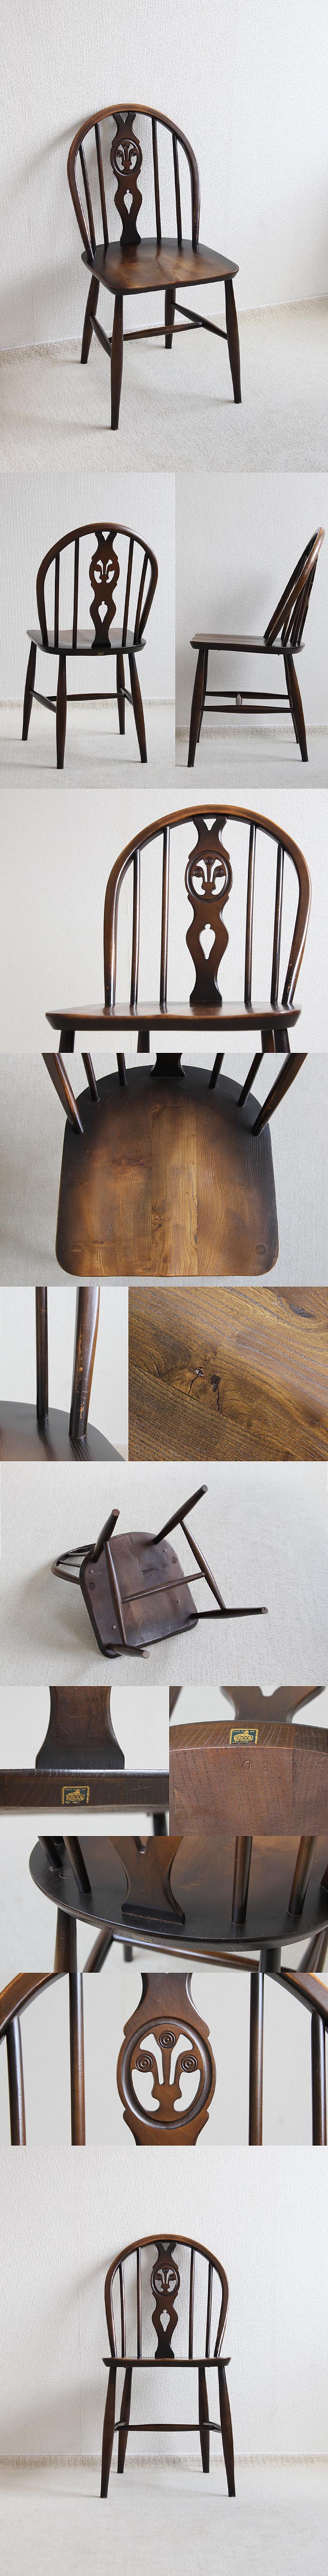 イギリス アンティーク アーコール シスルバックチェア 木製椅子 英国 家具「ercol」V-545